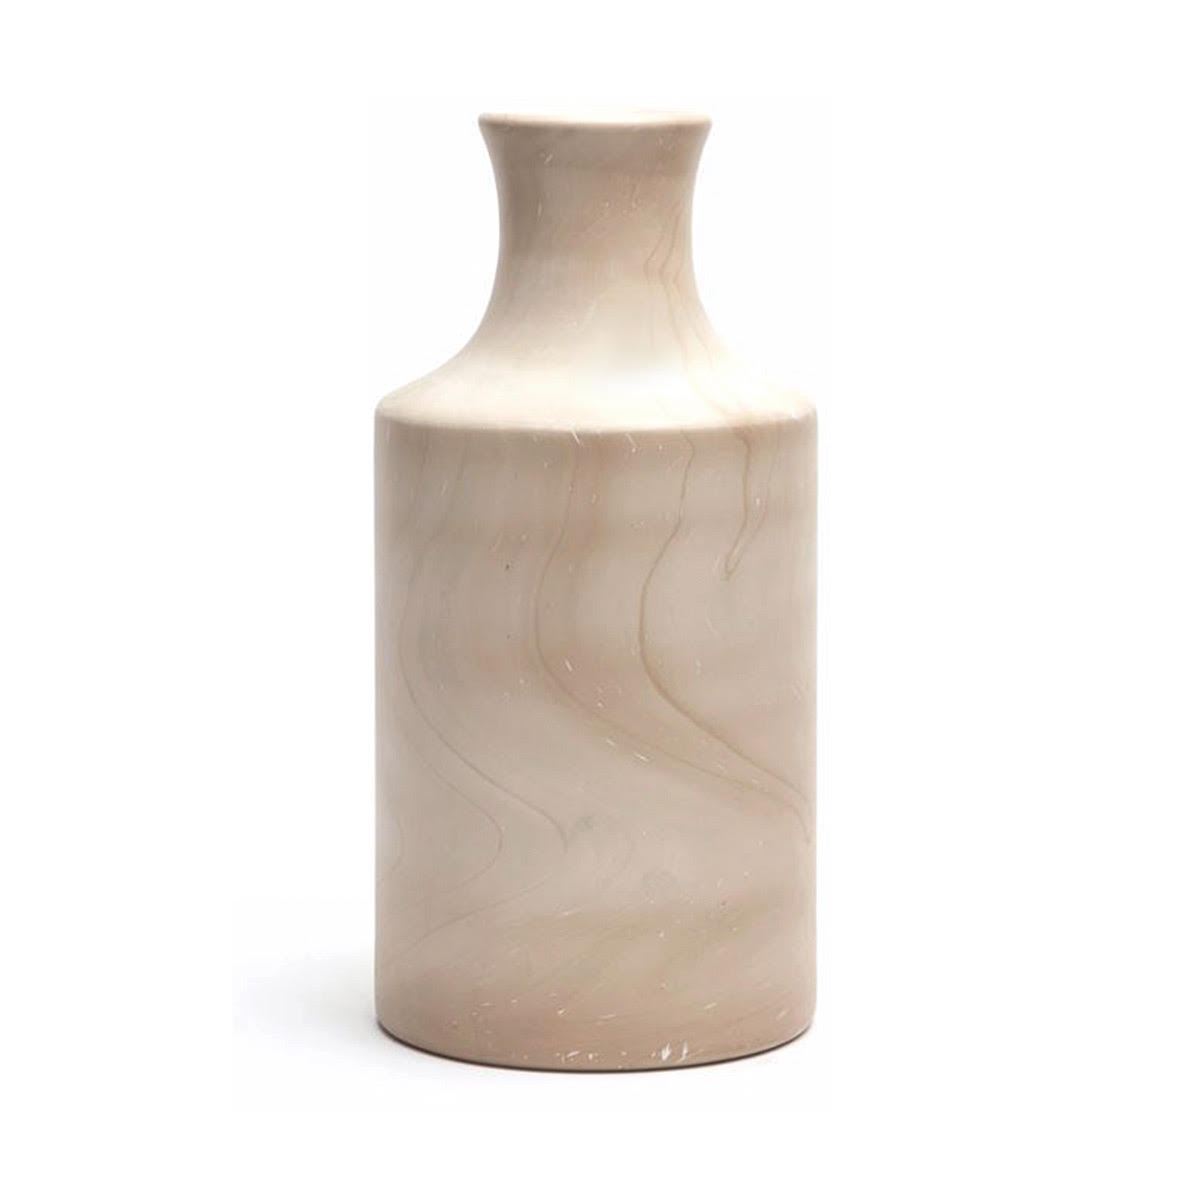 Rivka Mango White Stain Wood Vase, Large